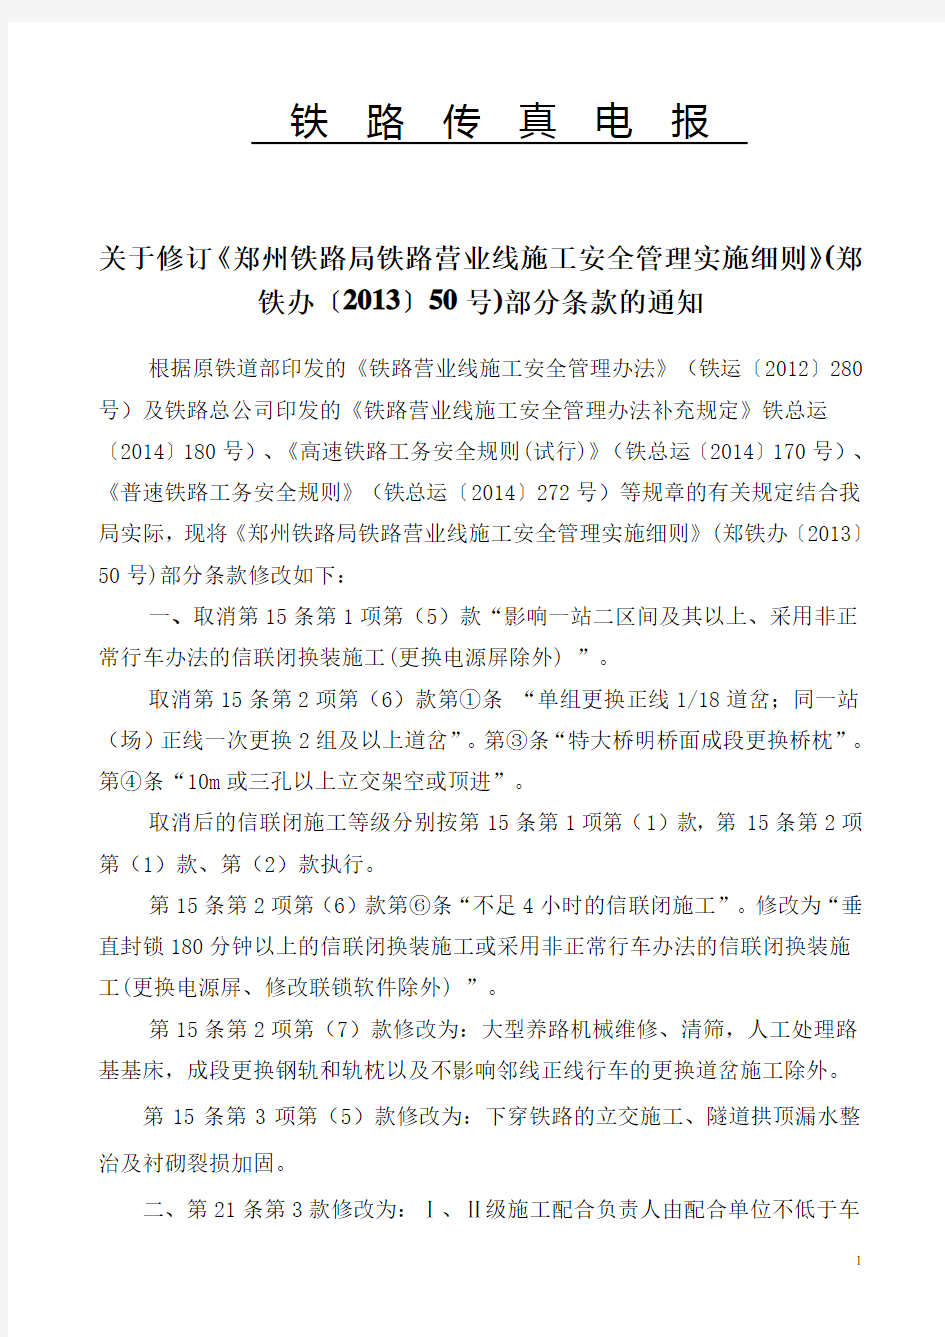 关于修订《郑州铁路局铁路营业线施工安全管理实施细则》(郑铁办〔2016〕96号).